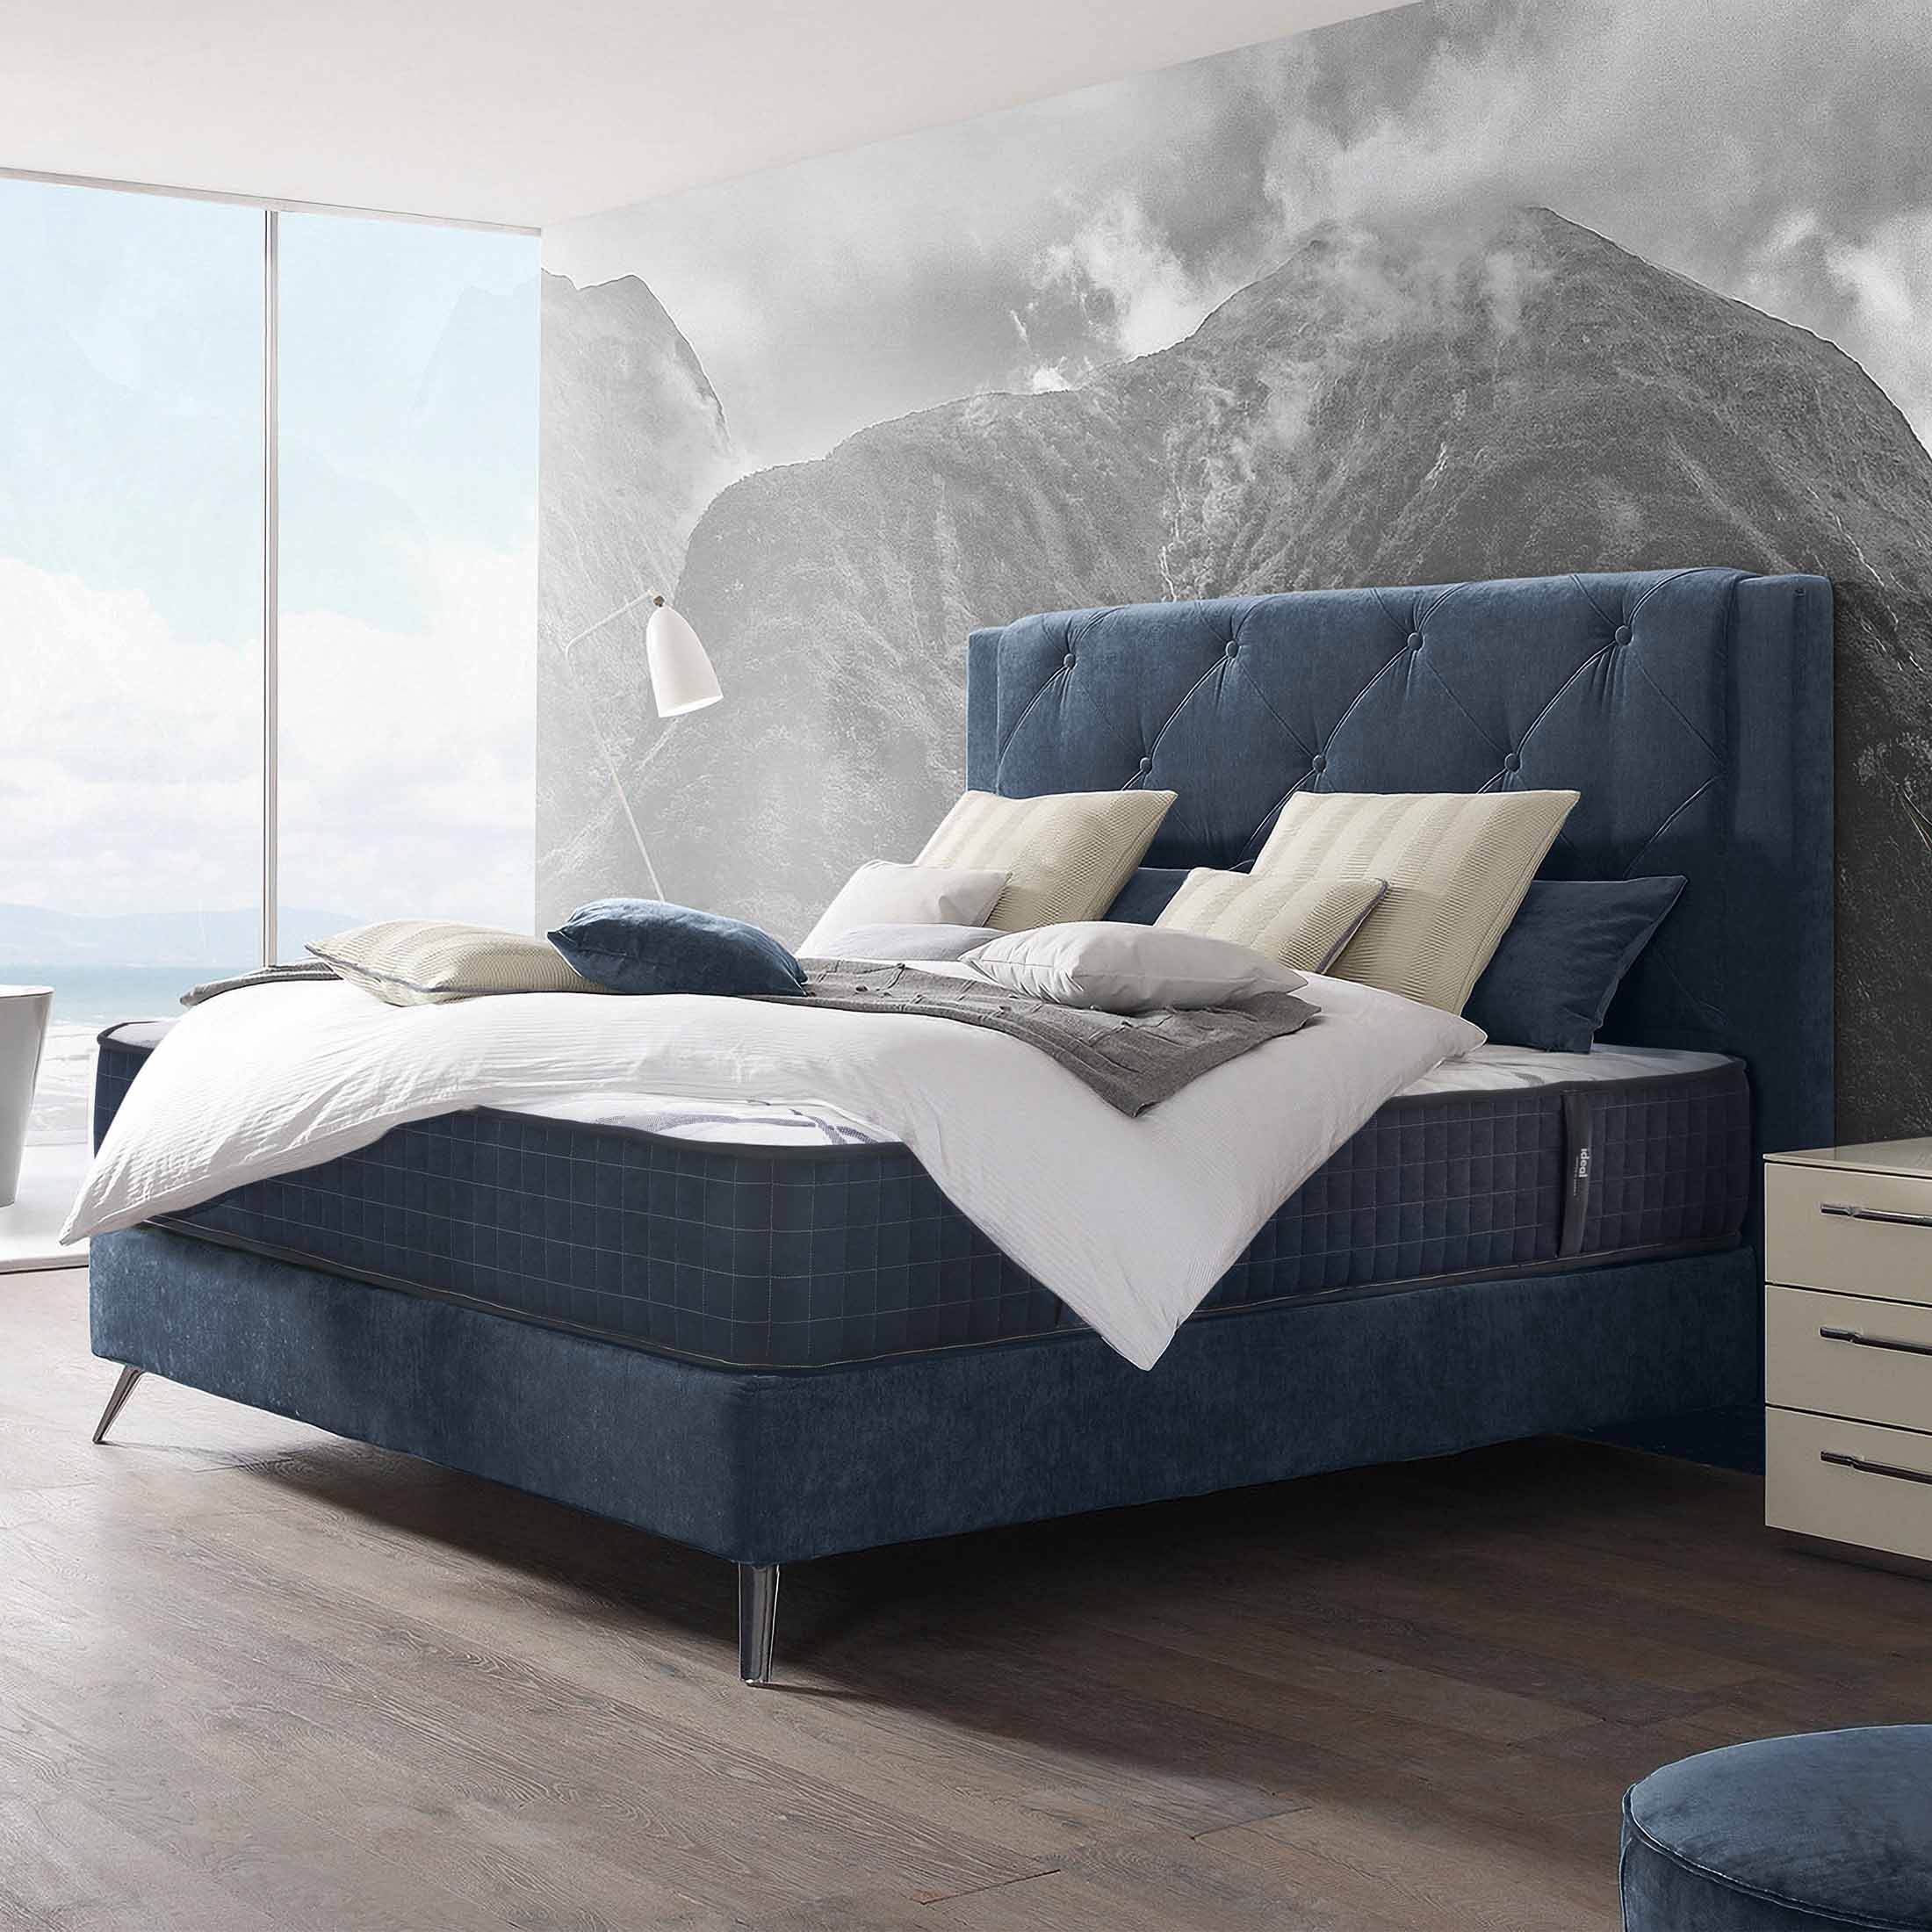 Saltea Ideal Sleep HOTEL SERIES NIGHT LUX, superortopedică, cu spumă poliuretanică și arcuri, husă cu aerisire optimă, Grosime 26 cm